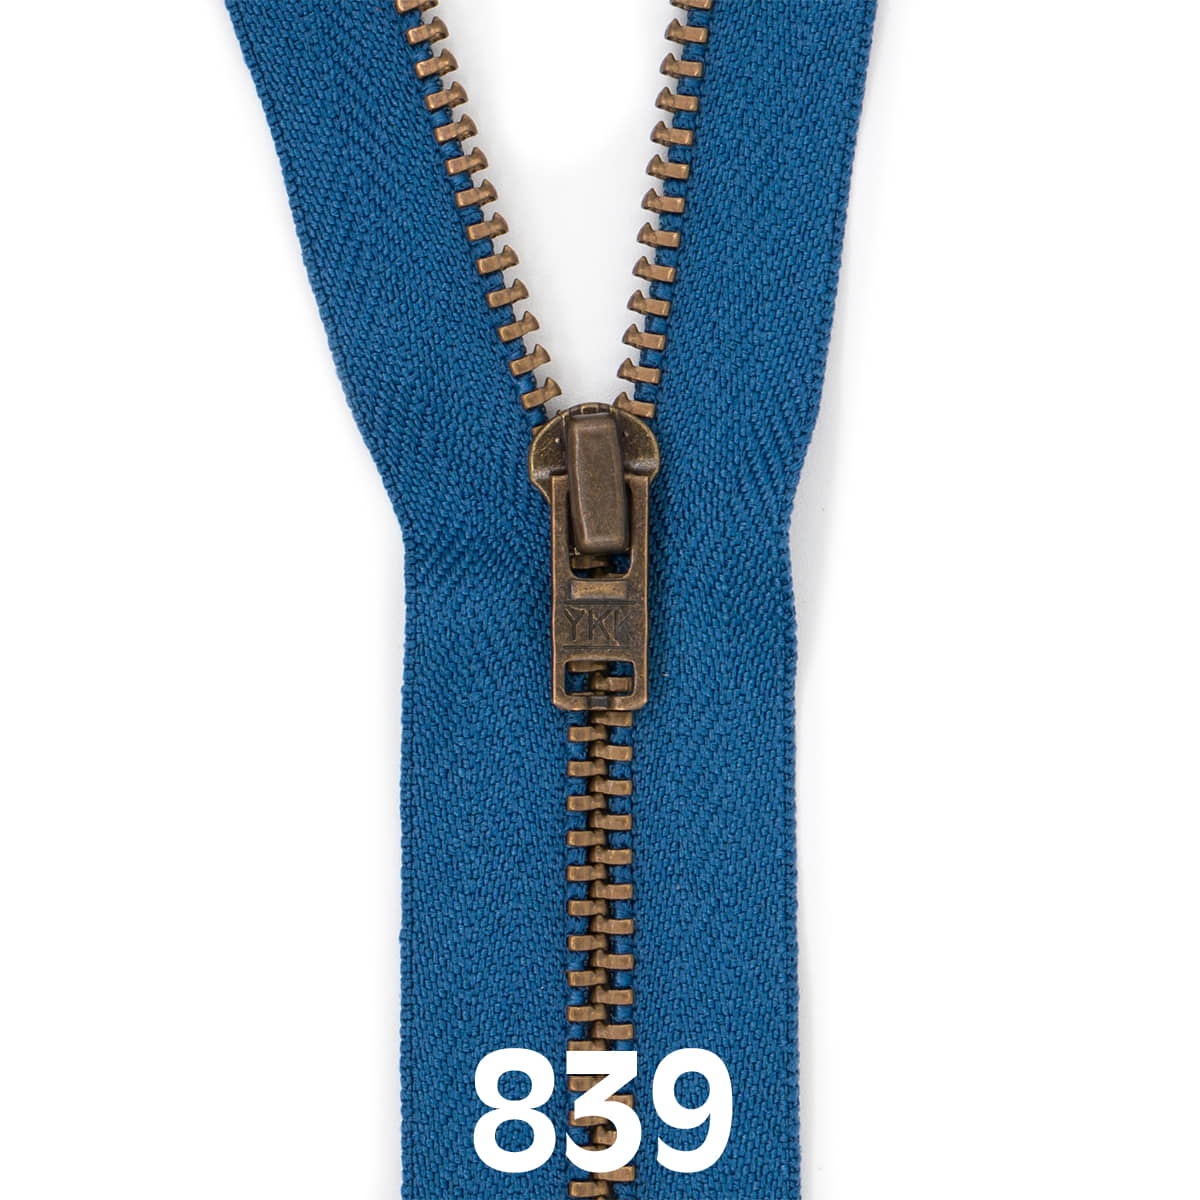 Broek rits metaal | brons fijn | 18 cm | YKK | 839 jeans blauw Rits RITS-BROEK-BRONZE-4.5-18CM-839-JEANS-BLUE - Fourniturenkraam.nl